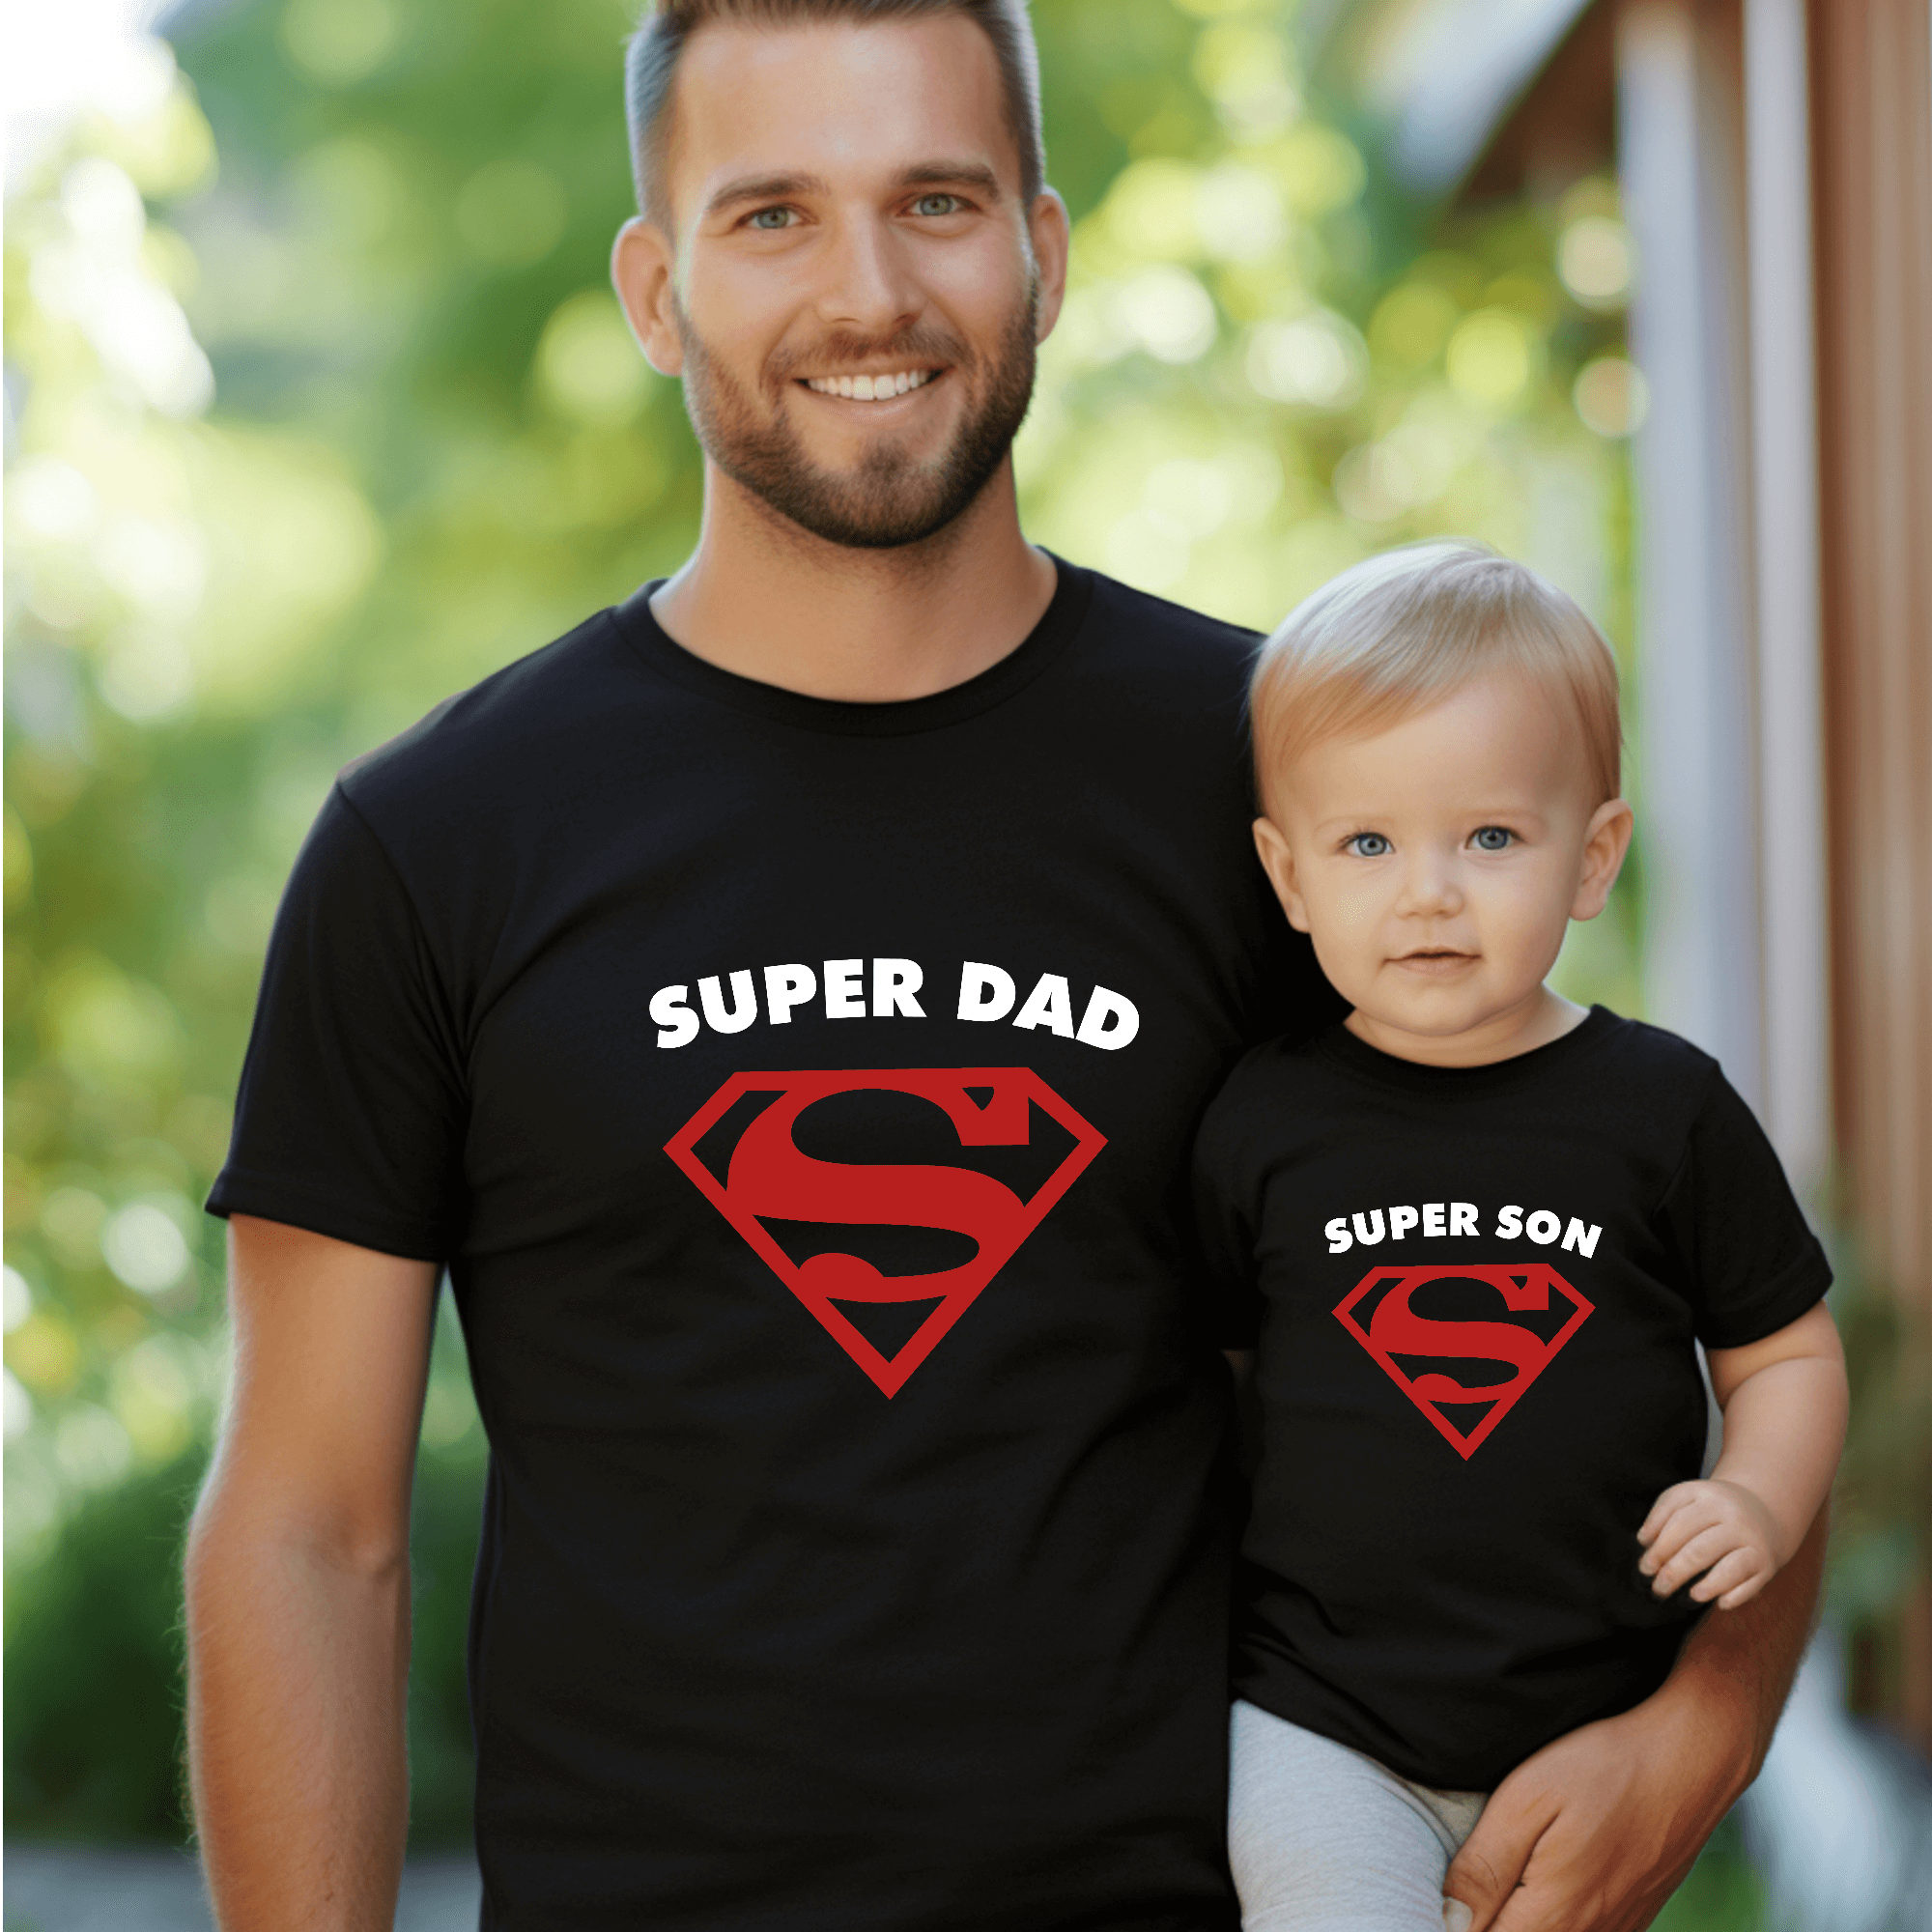 Superity T -Shirt, maman et enfants